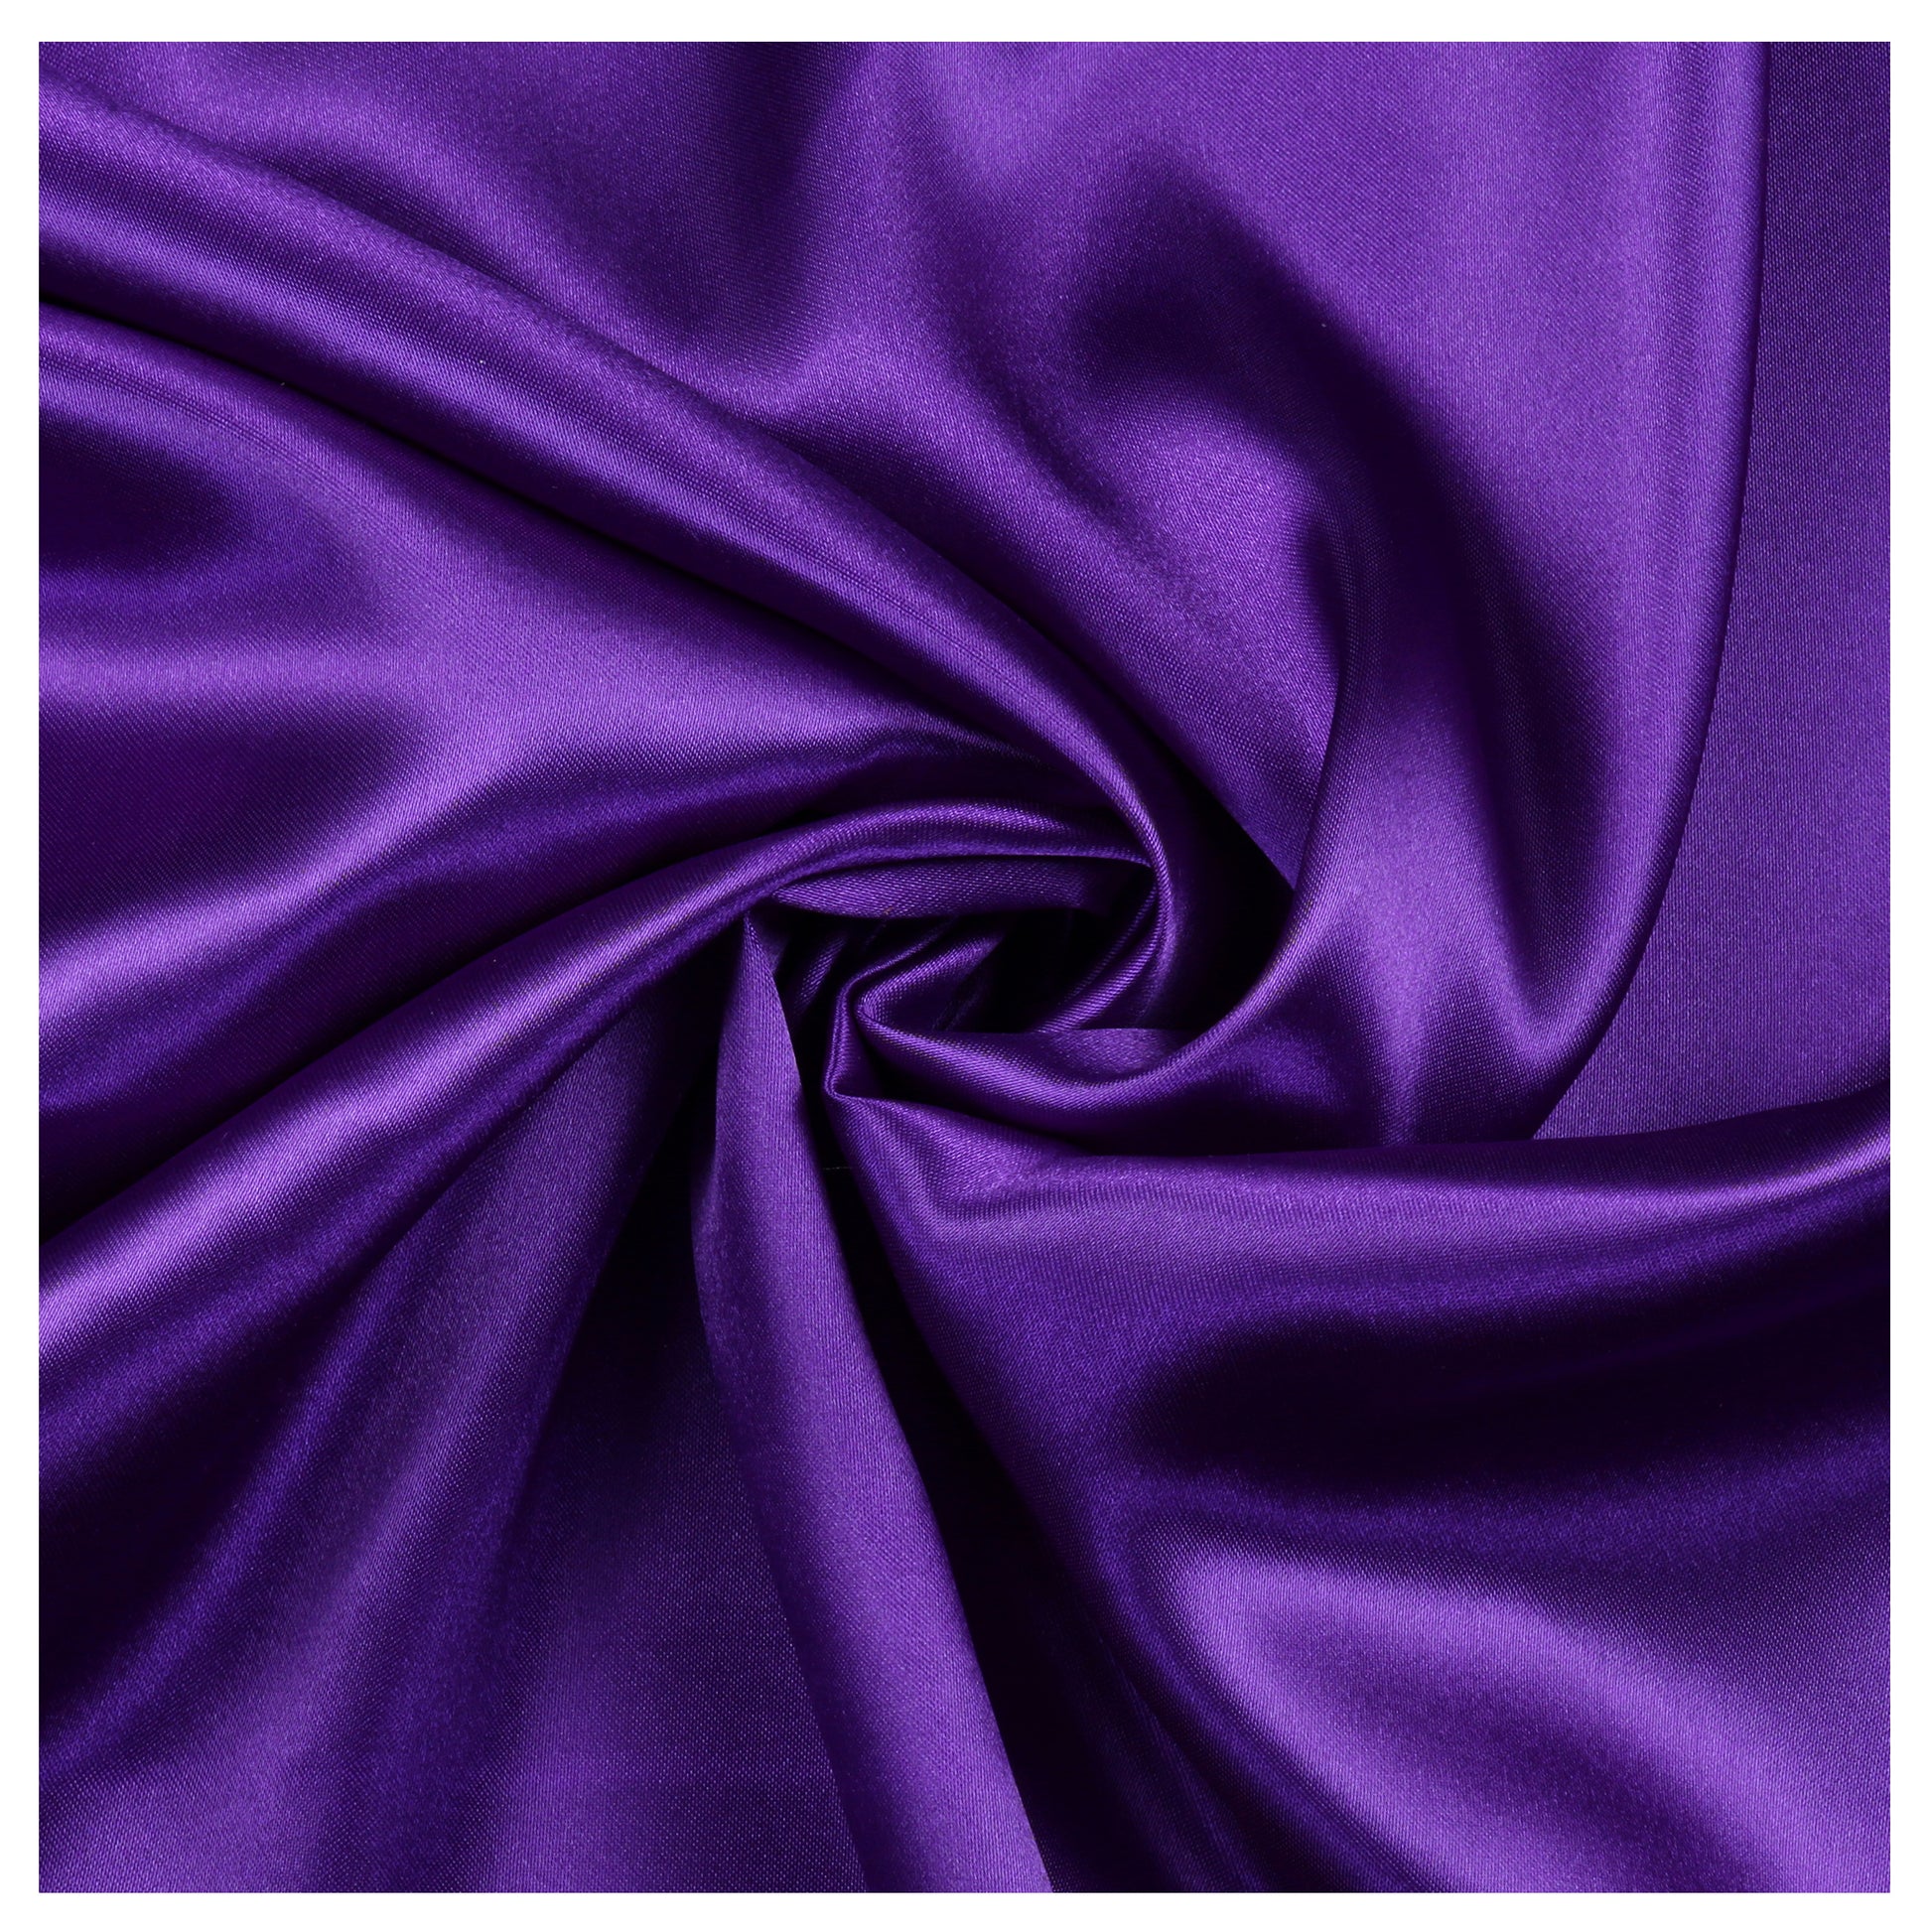 Cadbury Purple,0e2a2f3b-51f2-4fda-90db-7e8d4a790db5